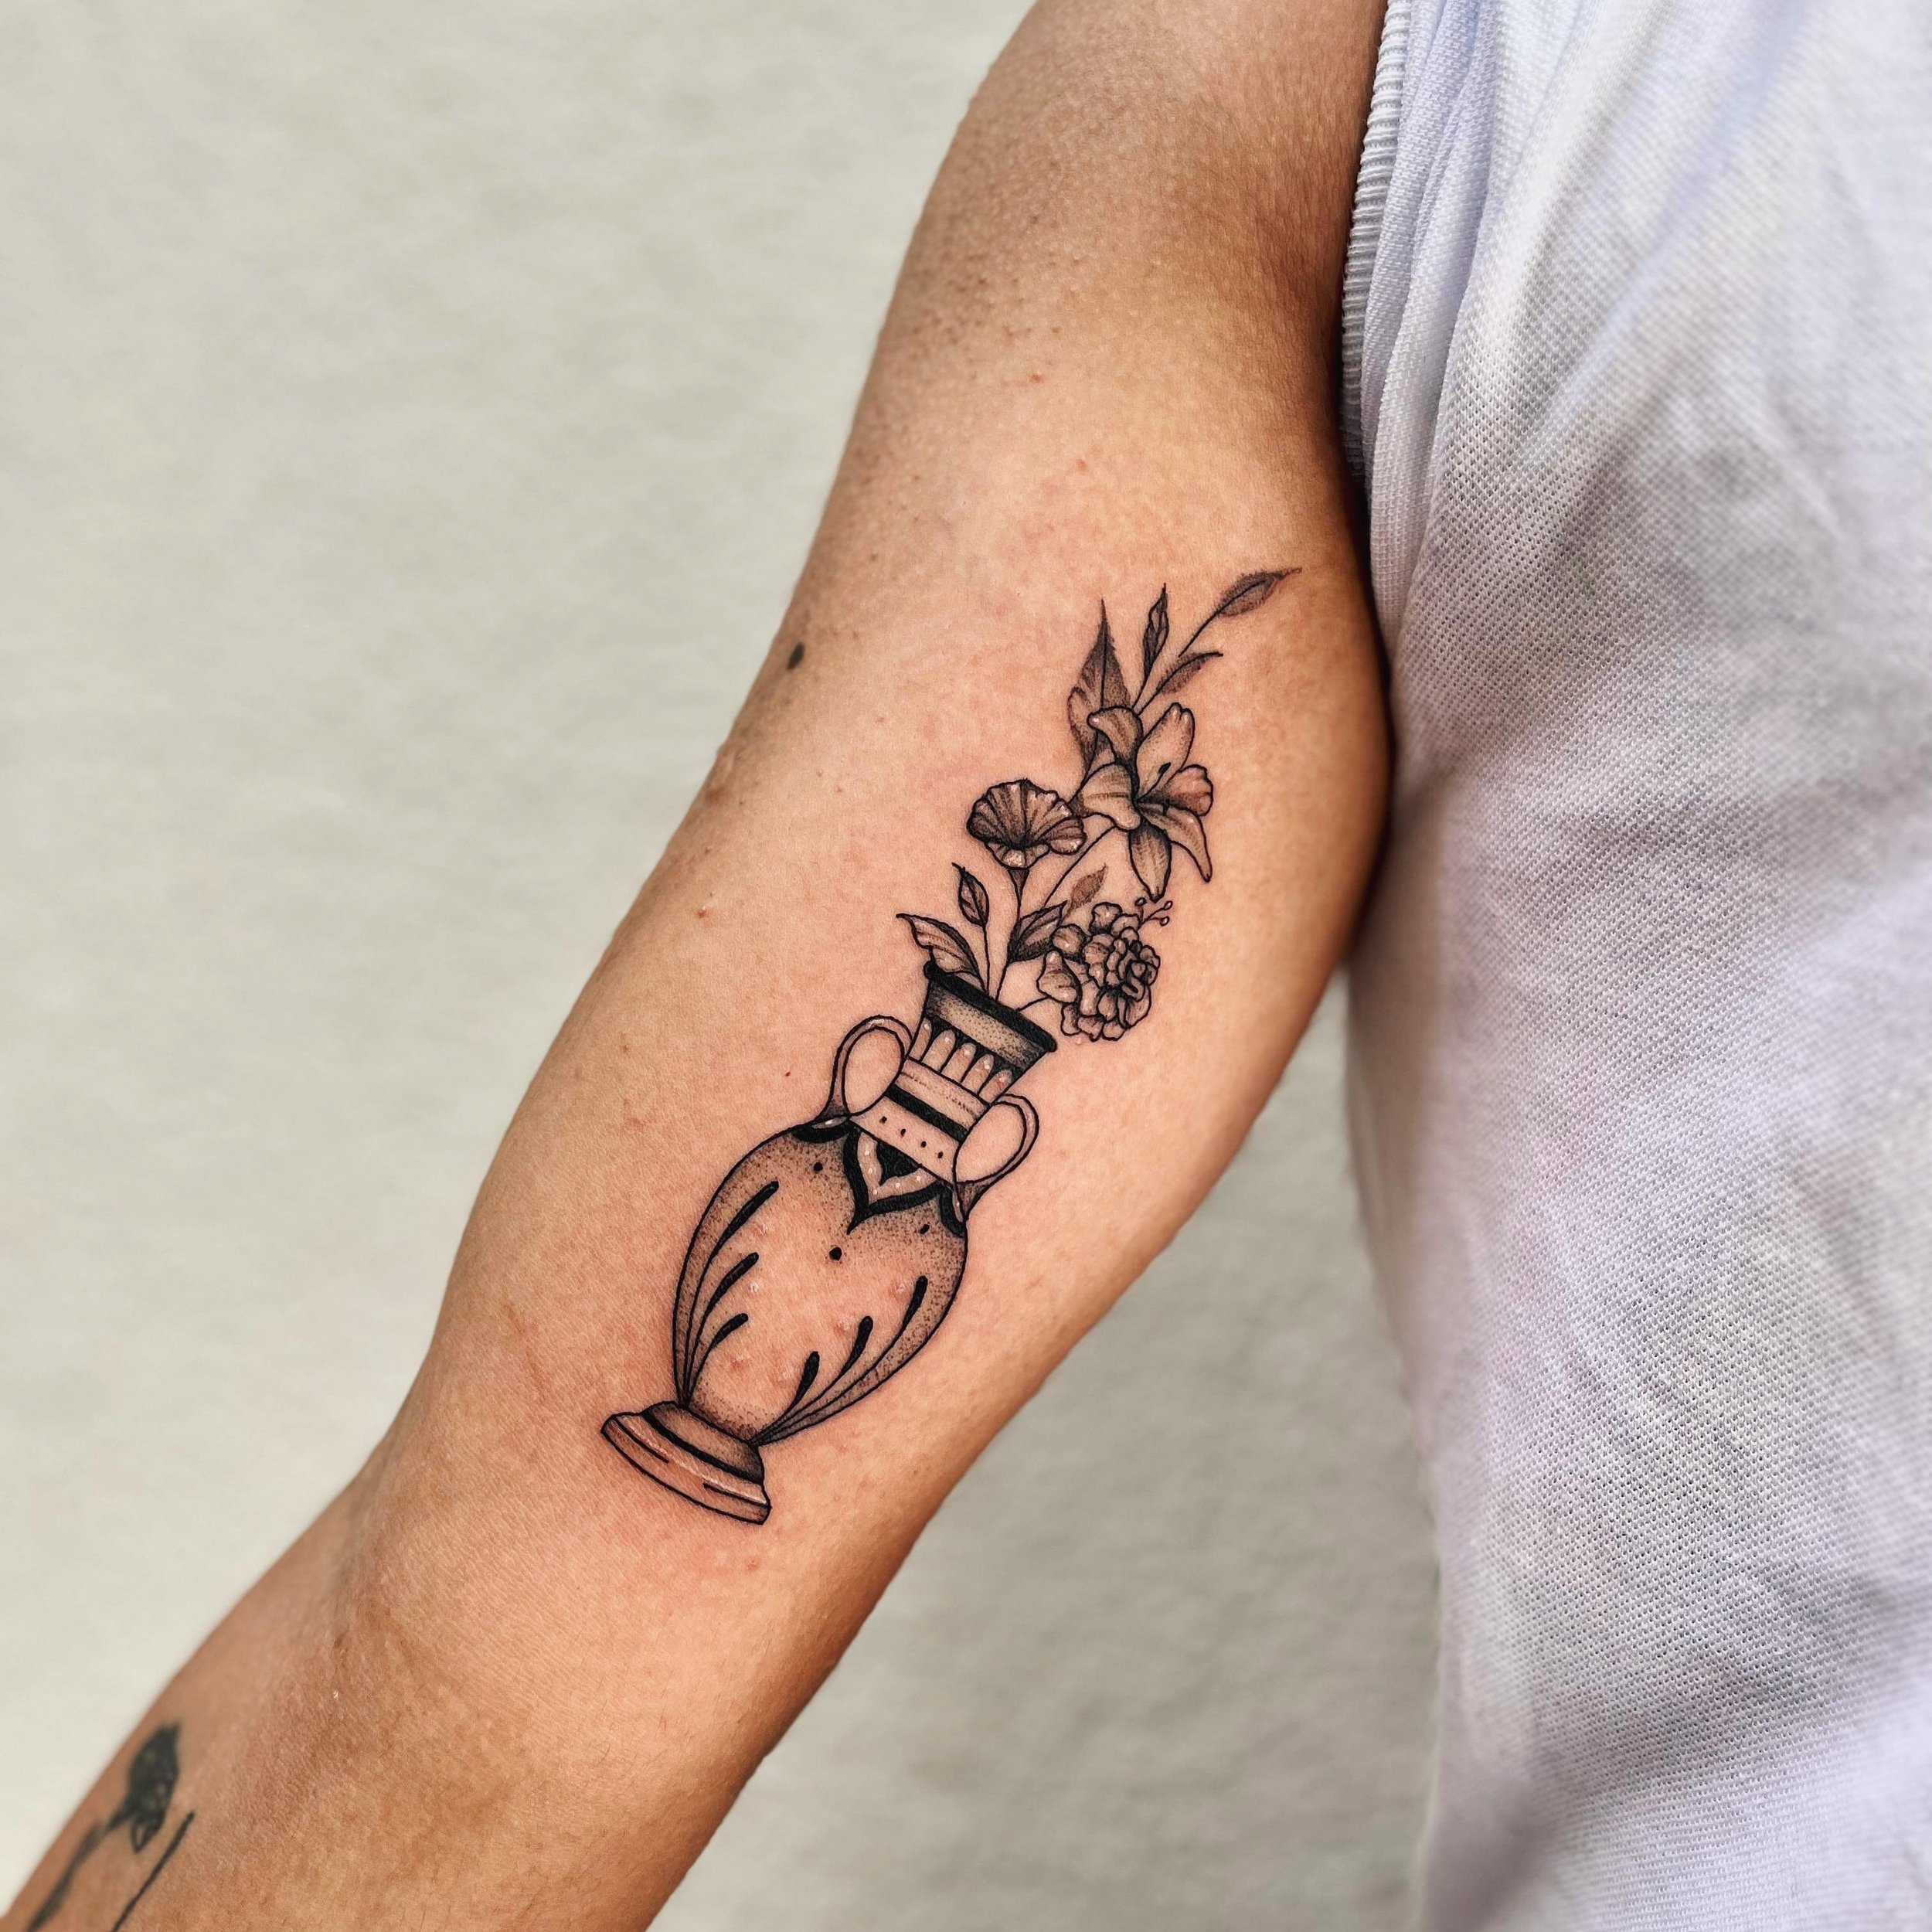 Prettiest vase piece done by Siarne 🏺 | @caasi.ink 

#squiresink #goldcoast #2024 #surfersparadise #tattoo #tattooparlor #tattoostudio #ink #inked @pirattattoo #pirattattoomachine #tattooartist #inkart #inkdrawing #skills #tattooideas #drpickles #ta